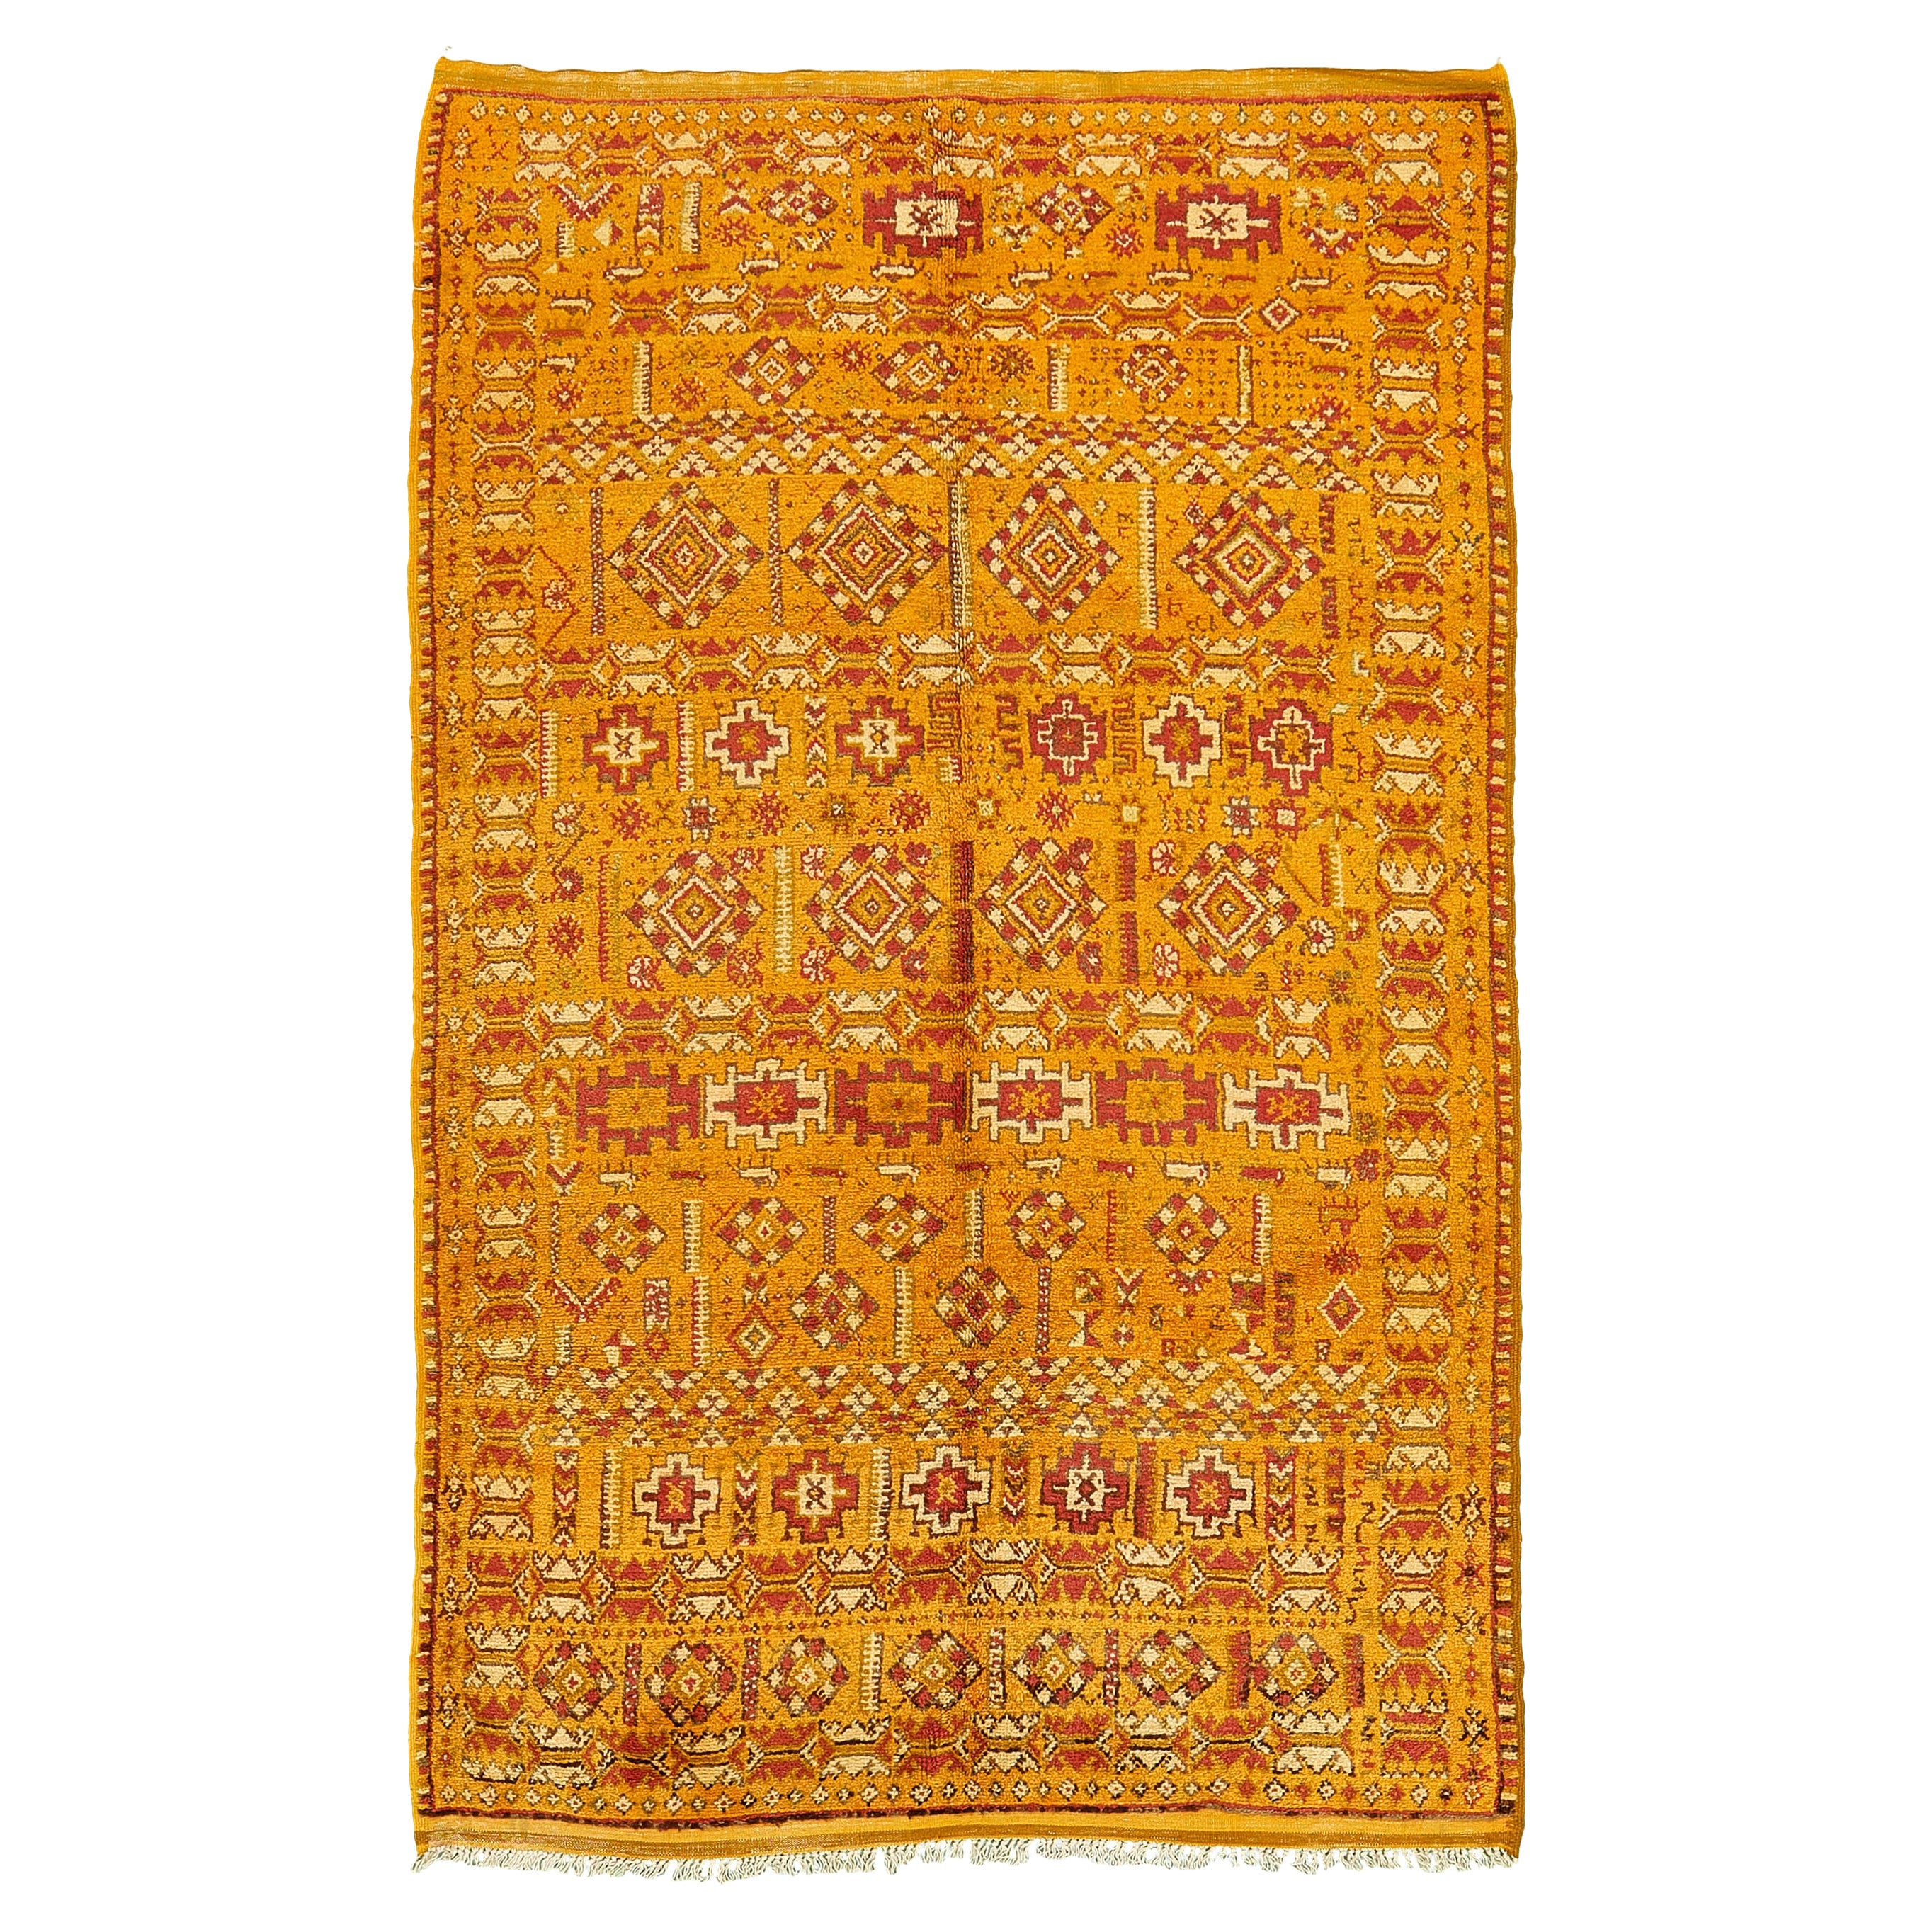 Marokkanischer Teppich aus der Vintage-Kollektion High Atlas